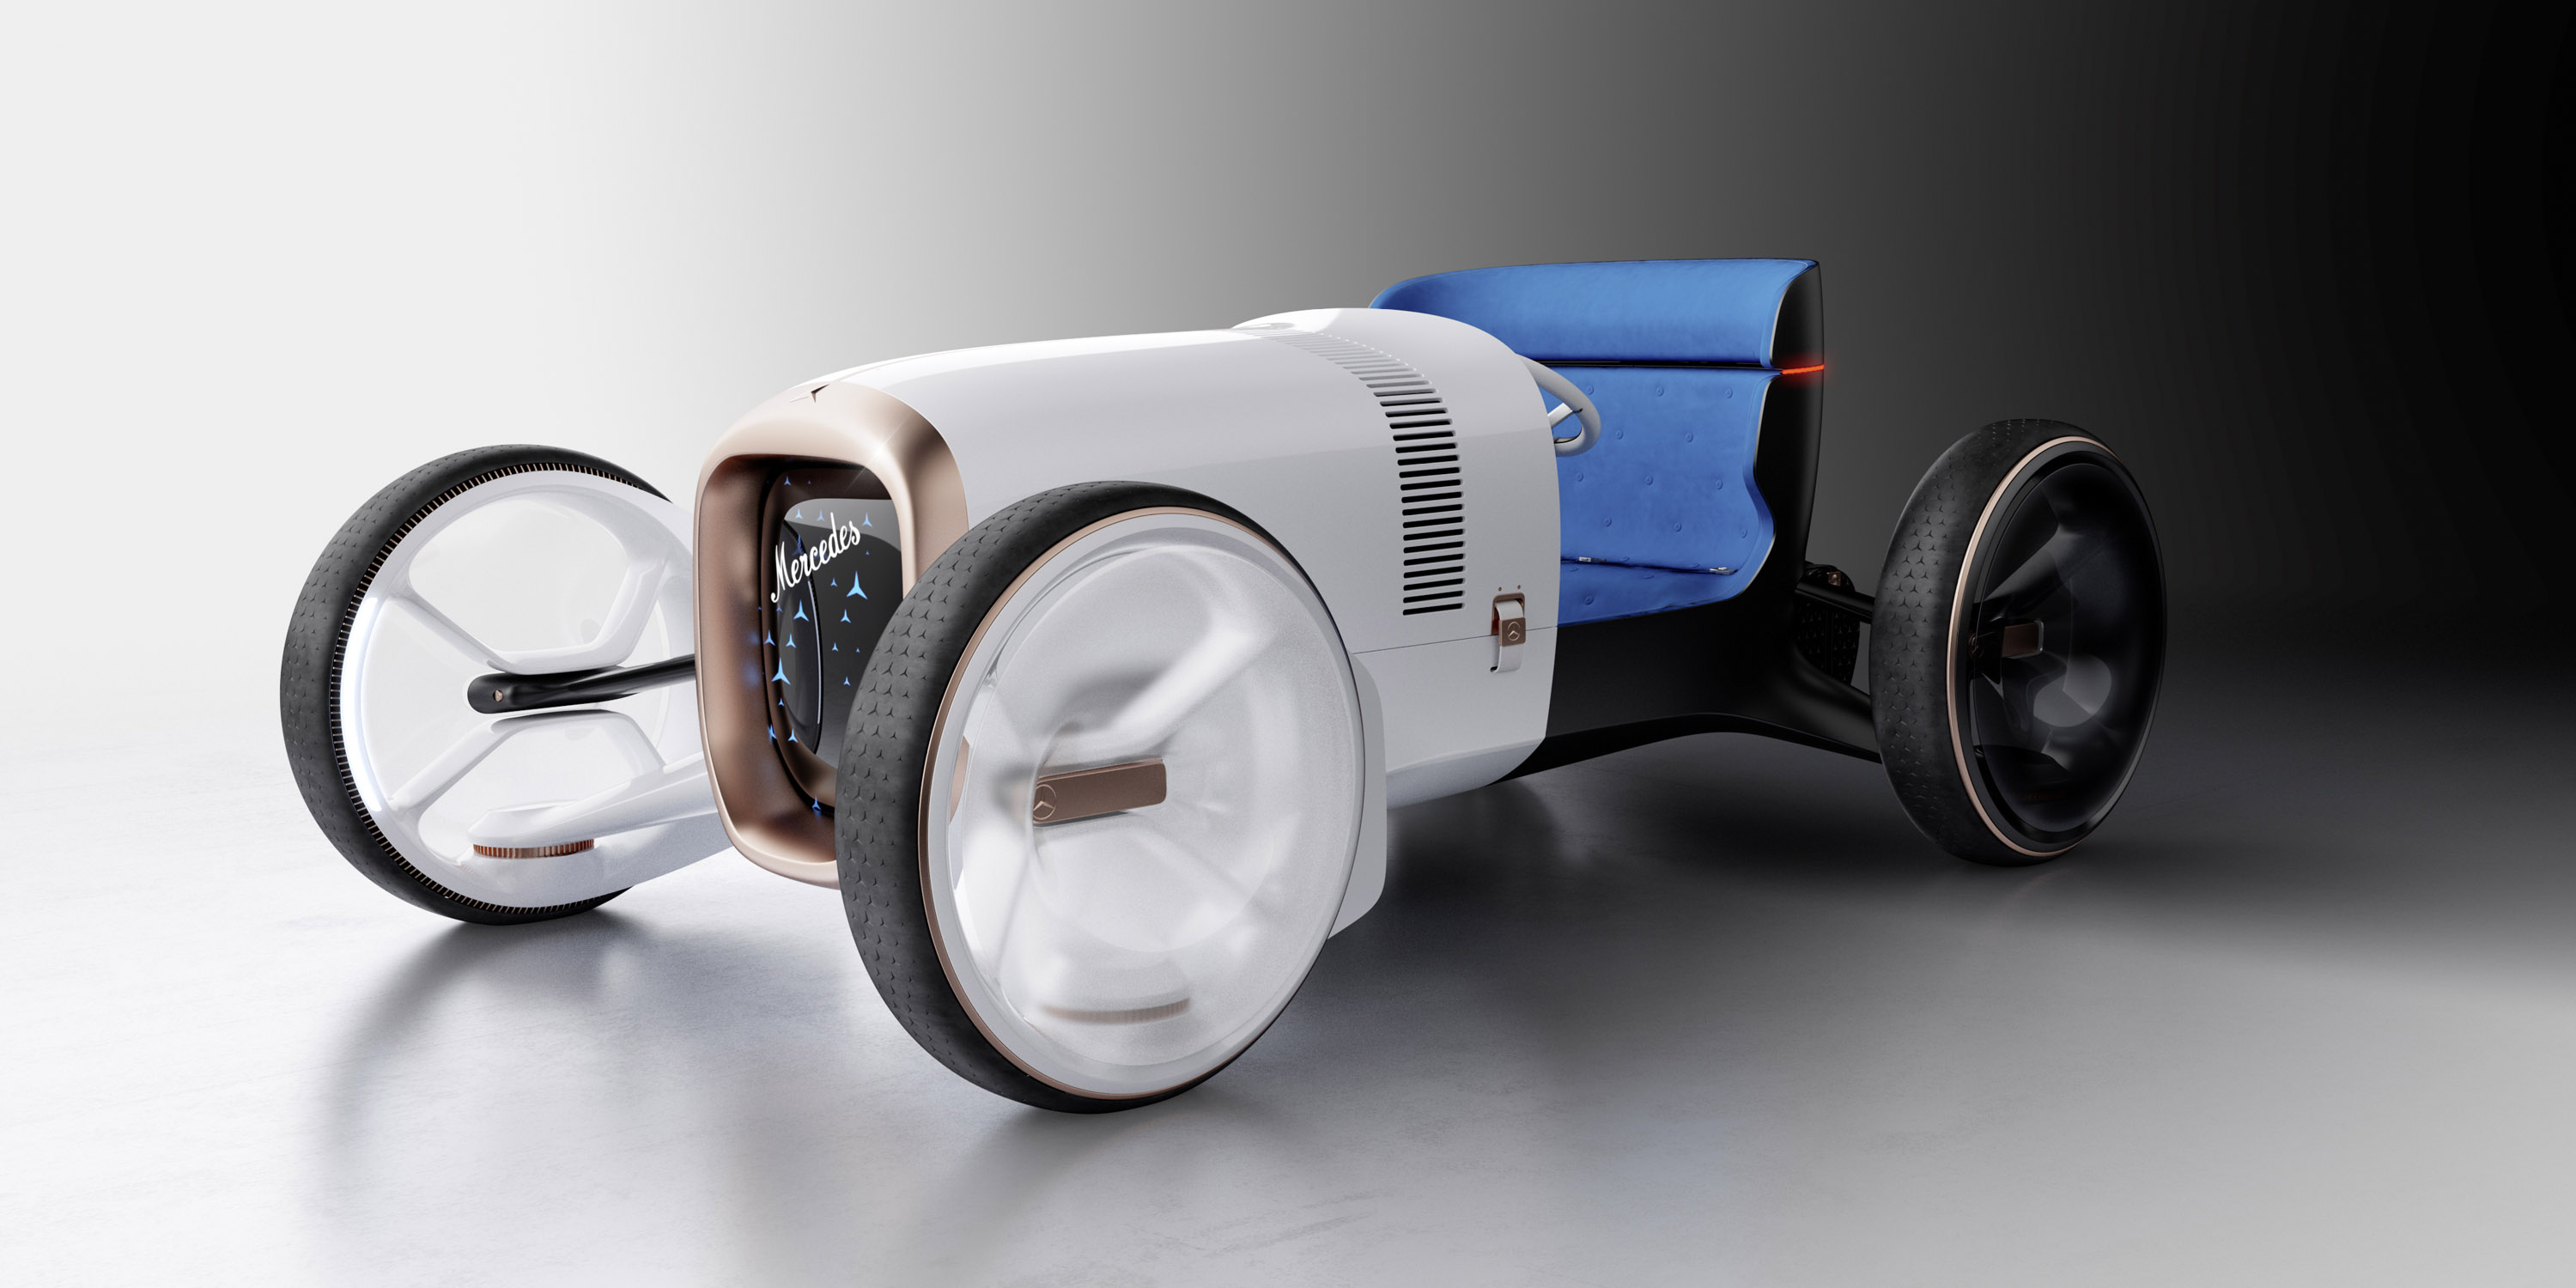 Сам концепт-кар переосмысливает исторический Simplex как двухместный автомобиль с отдельно стоящими колесами, альтернативным приводом, системой пользовательского интерфейса следующего поколения и привлекательным дизайном.